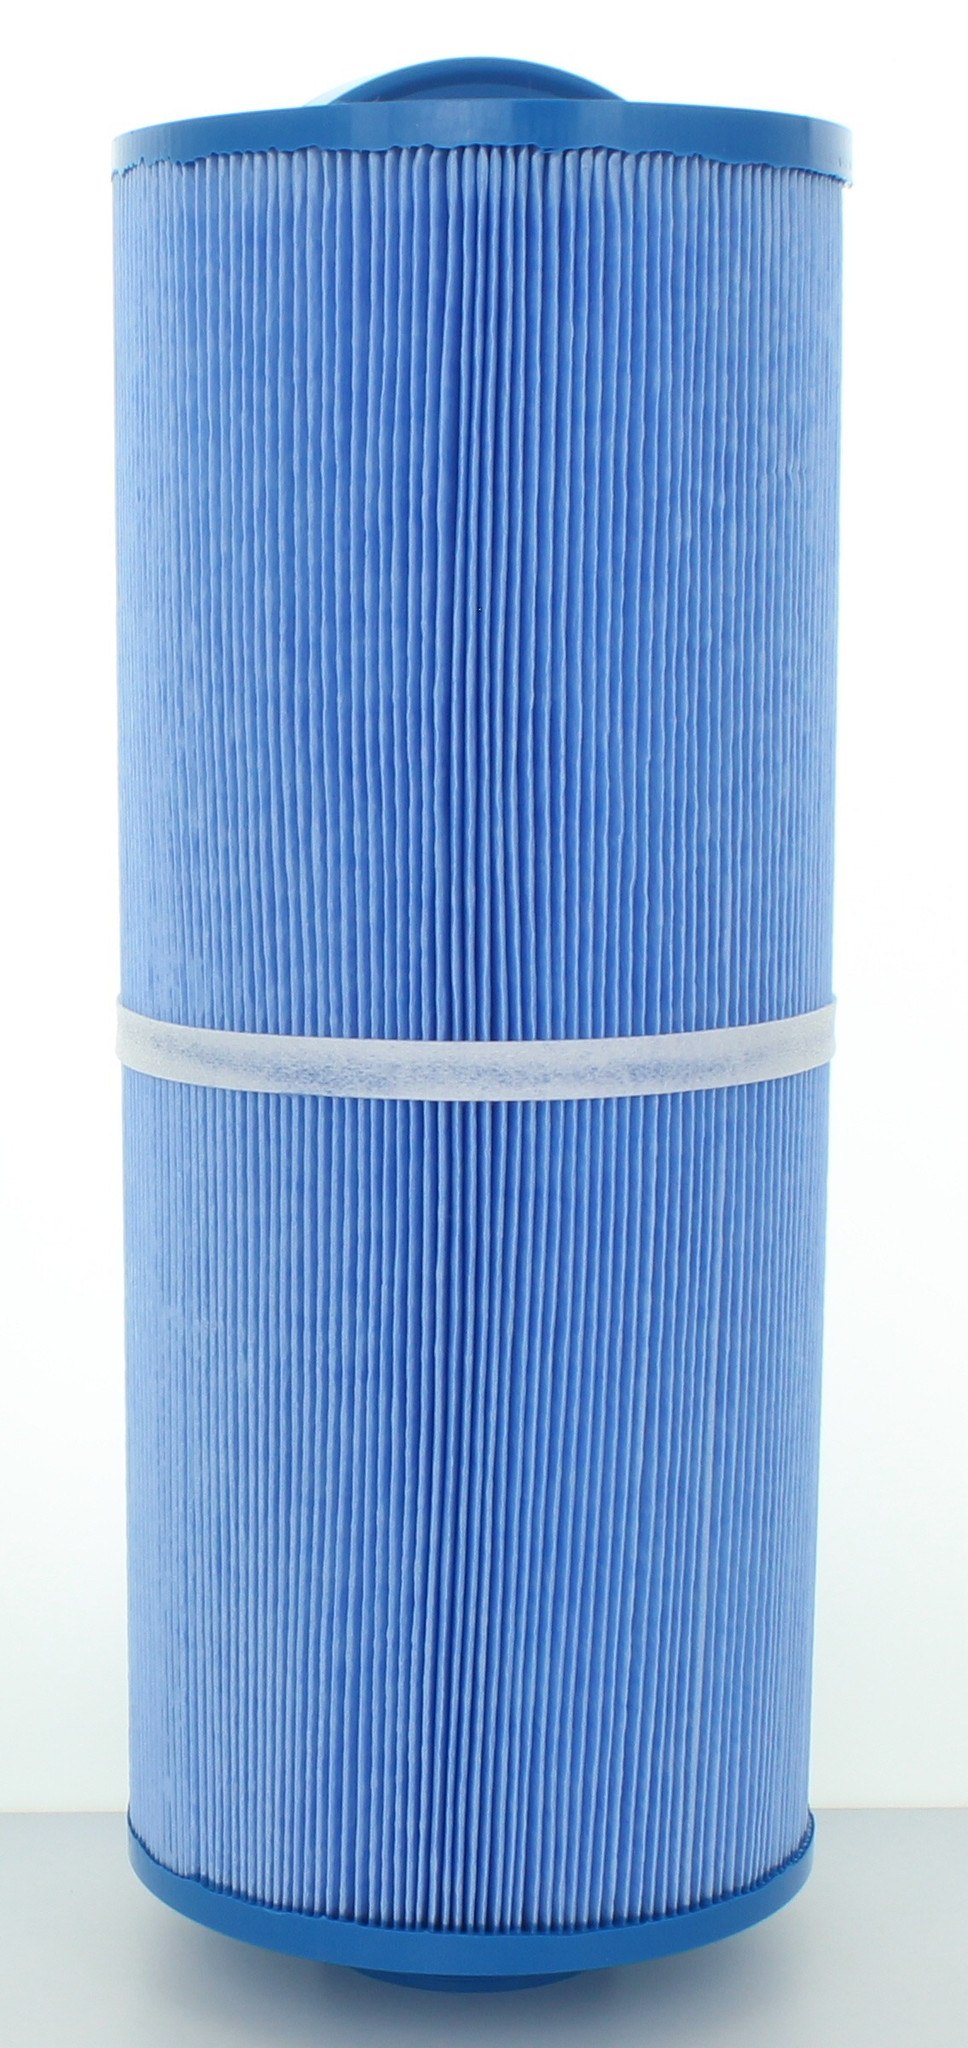 5H9-199-1M Spa Filter Cartridge